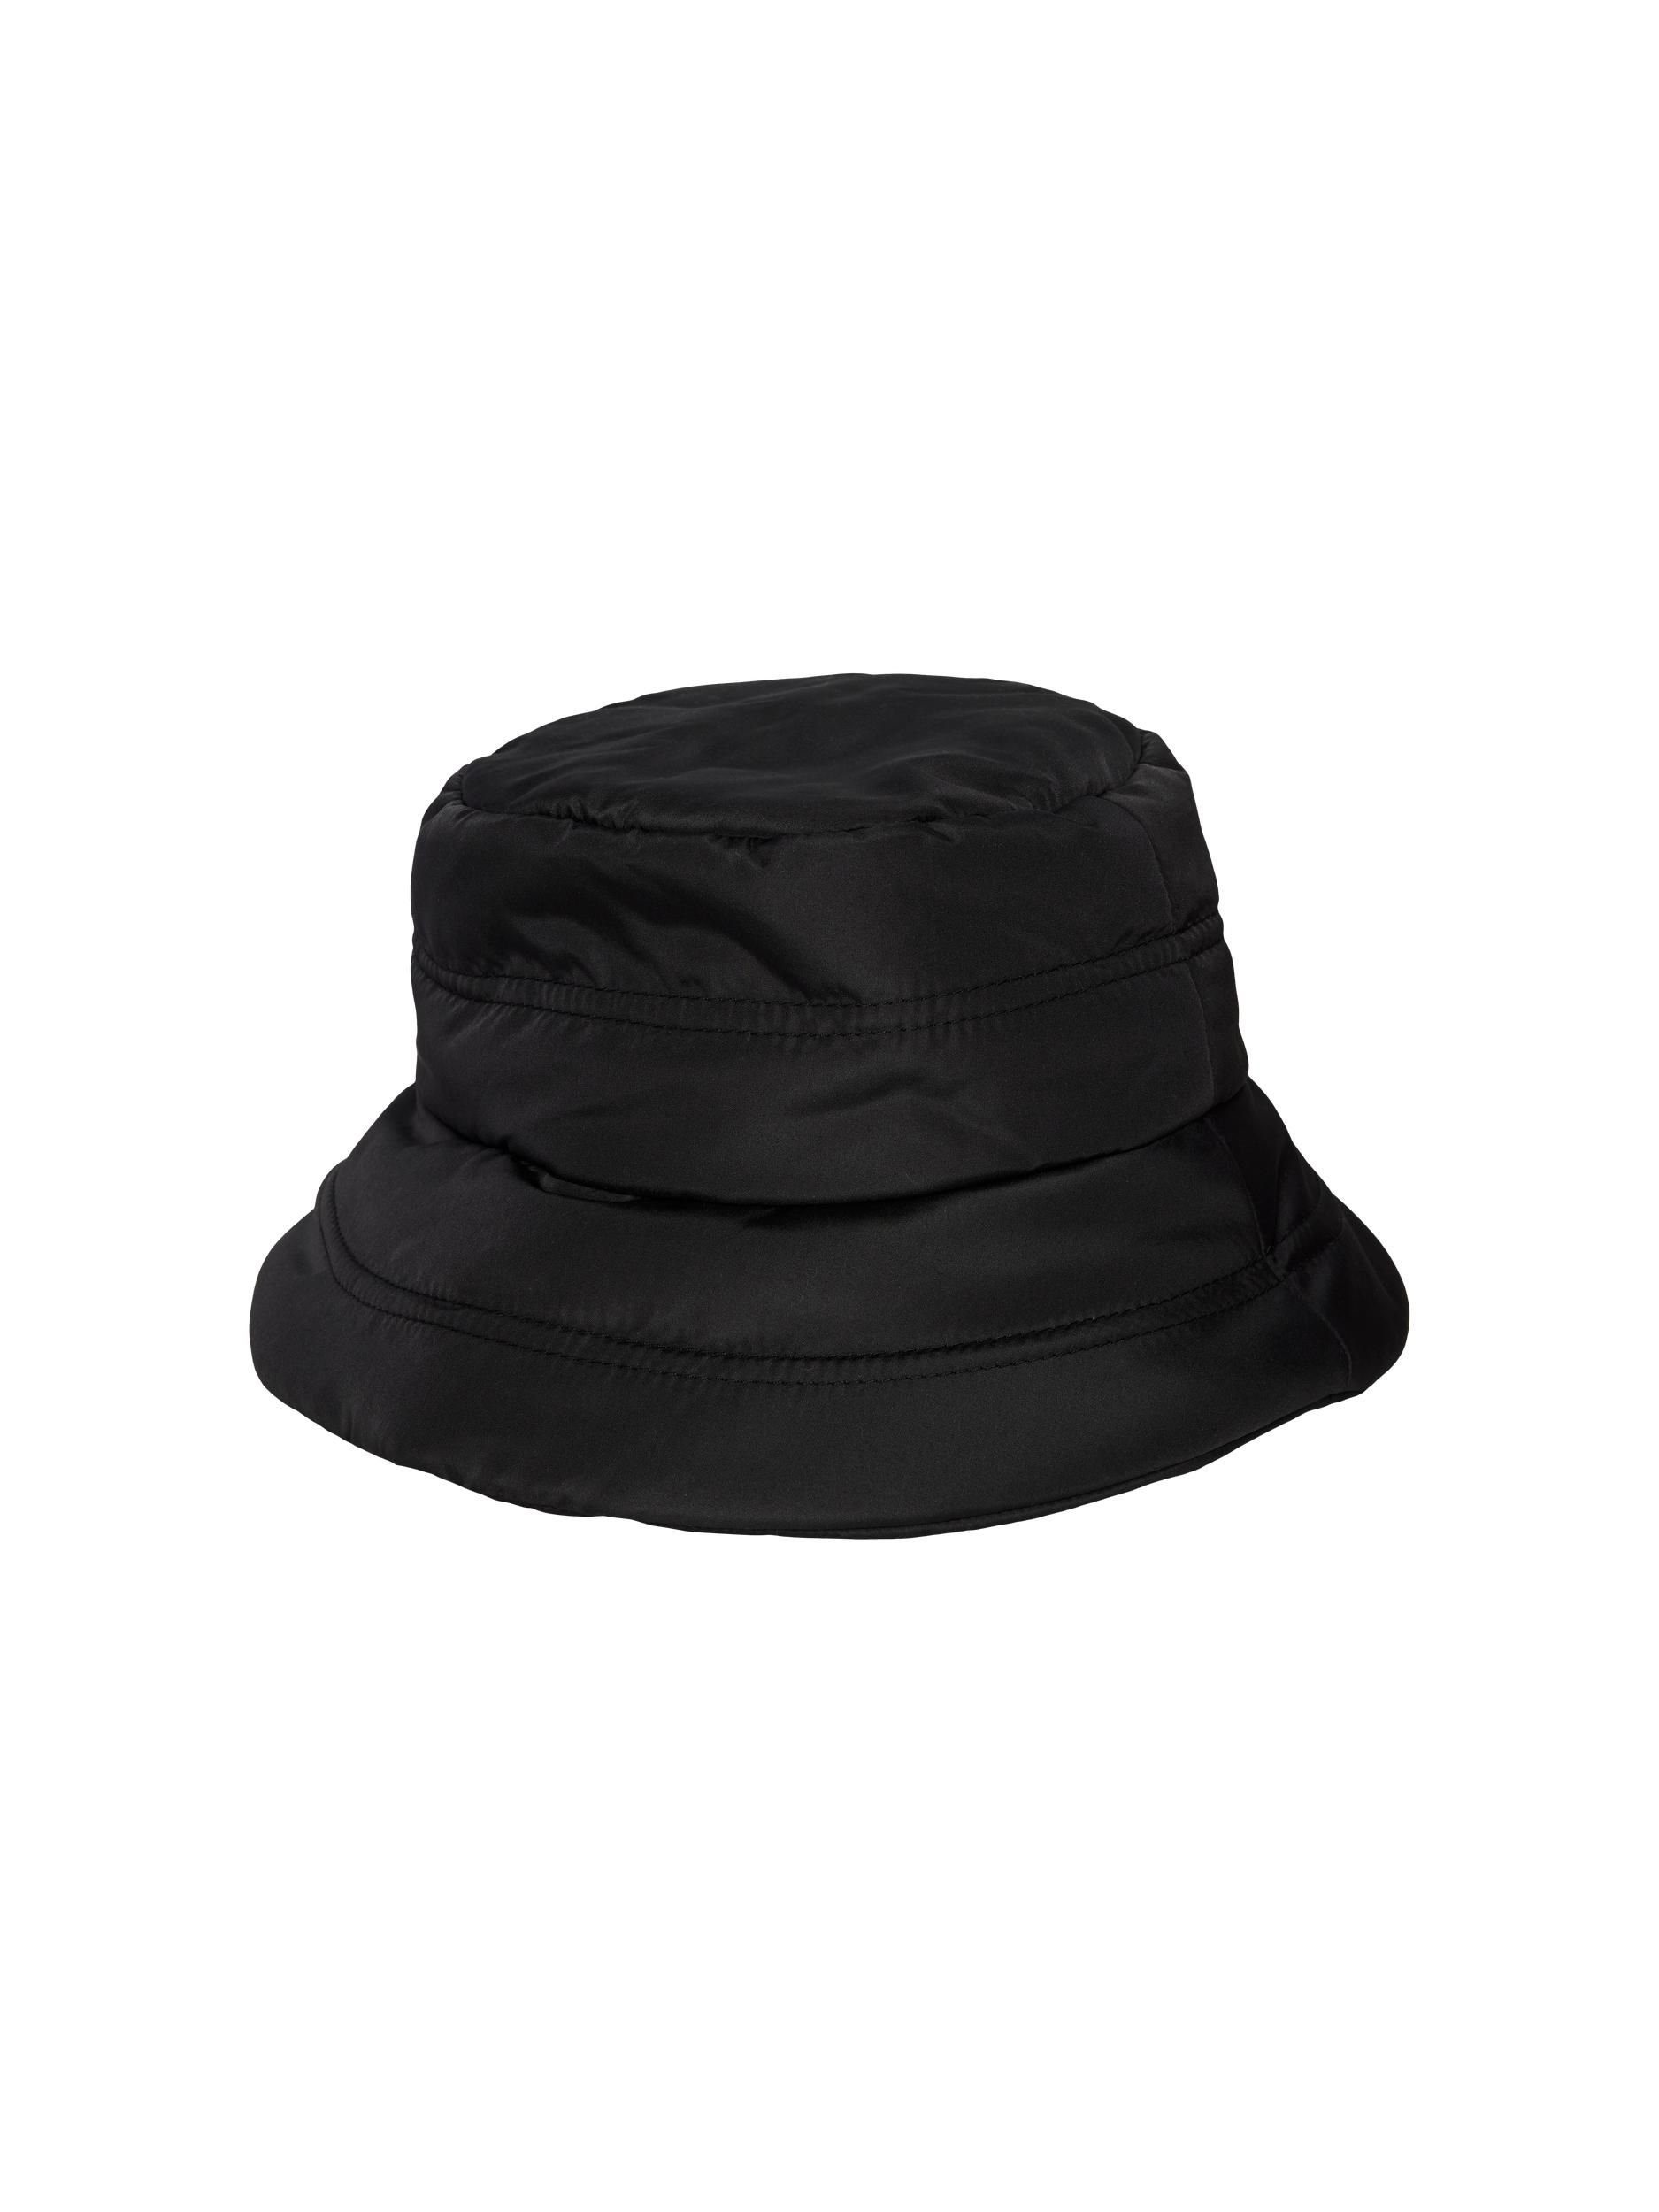 pieces Fischerhut - Sommerhut - Bucket Hat - PCJESSIE BUCKET HAT